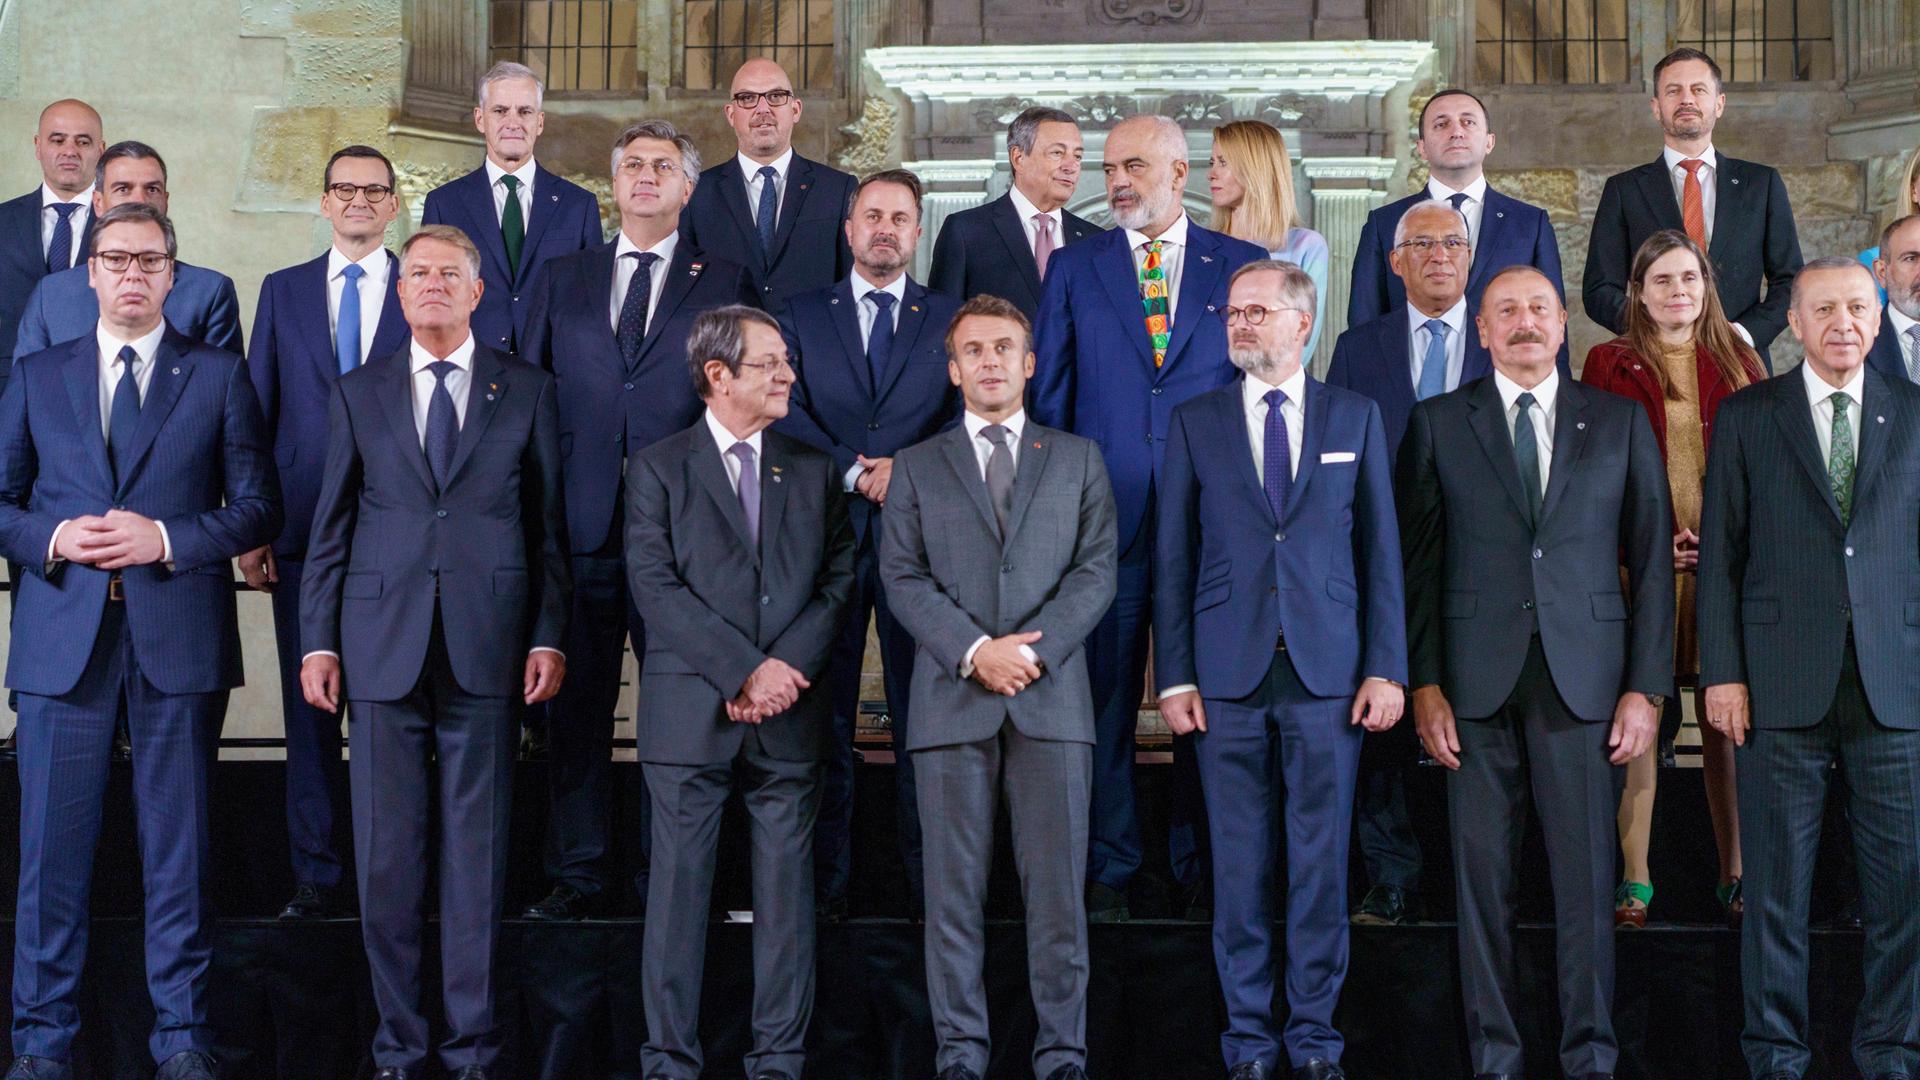 Europäische Staatschefs stehen zum Gruppenfoto auf Stufen, in der Mitte Frankreichs Präsident Macron.